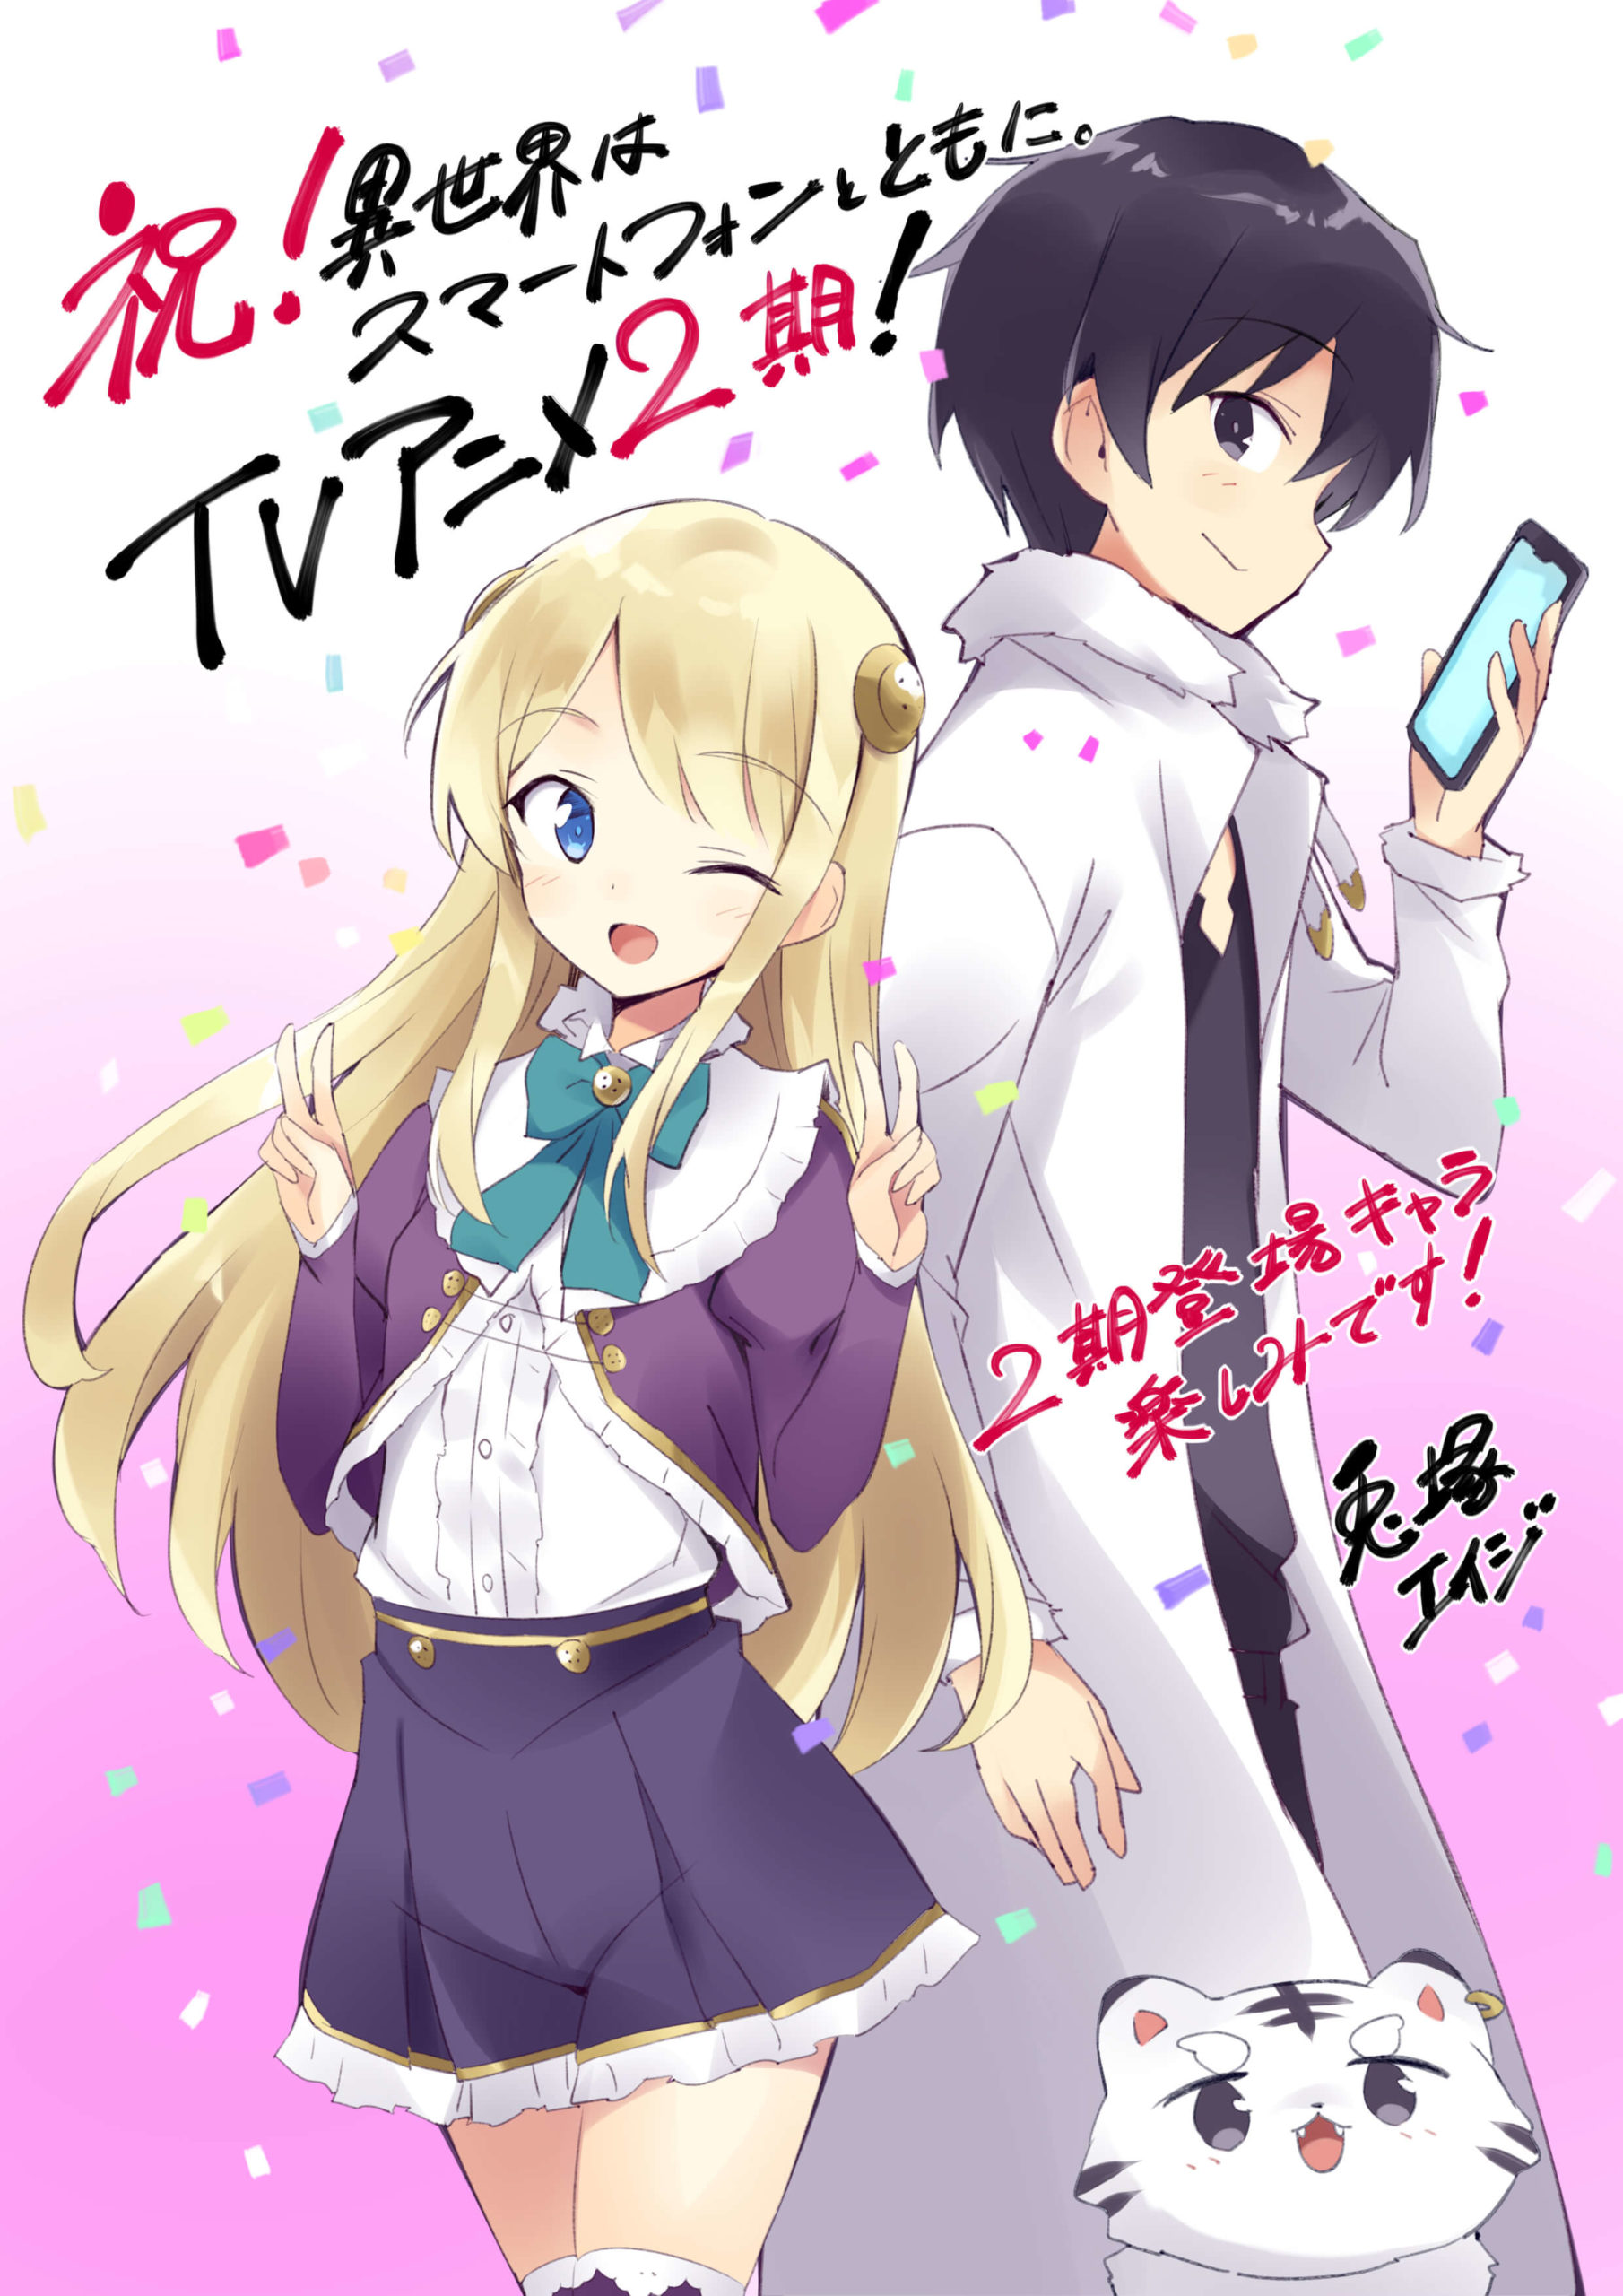 Isekai wa Smartphone to Tomo ni. 2 Dublado - Episódio 2 - Animes